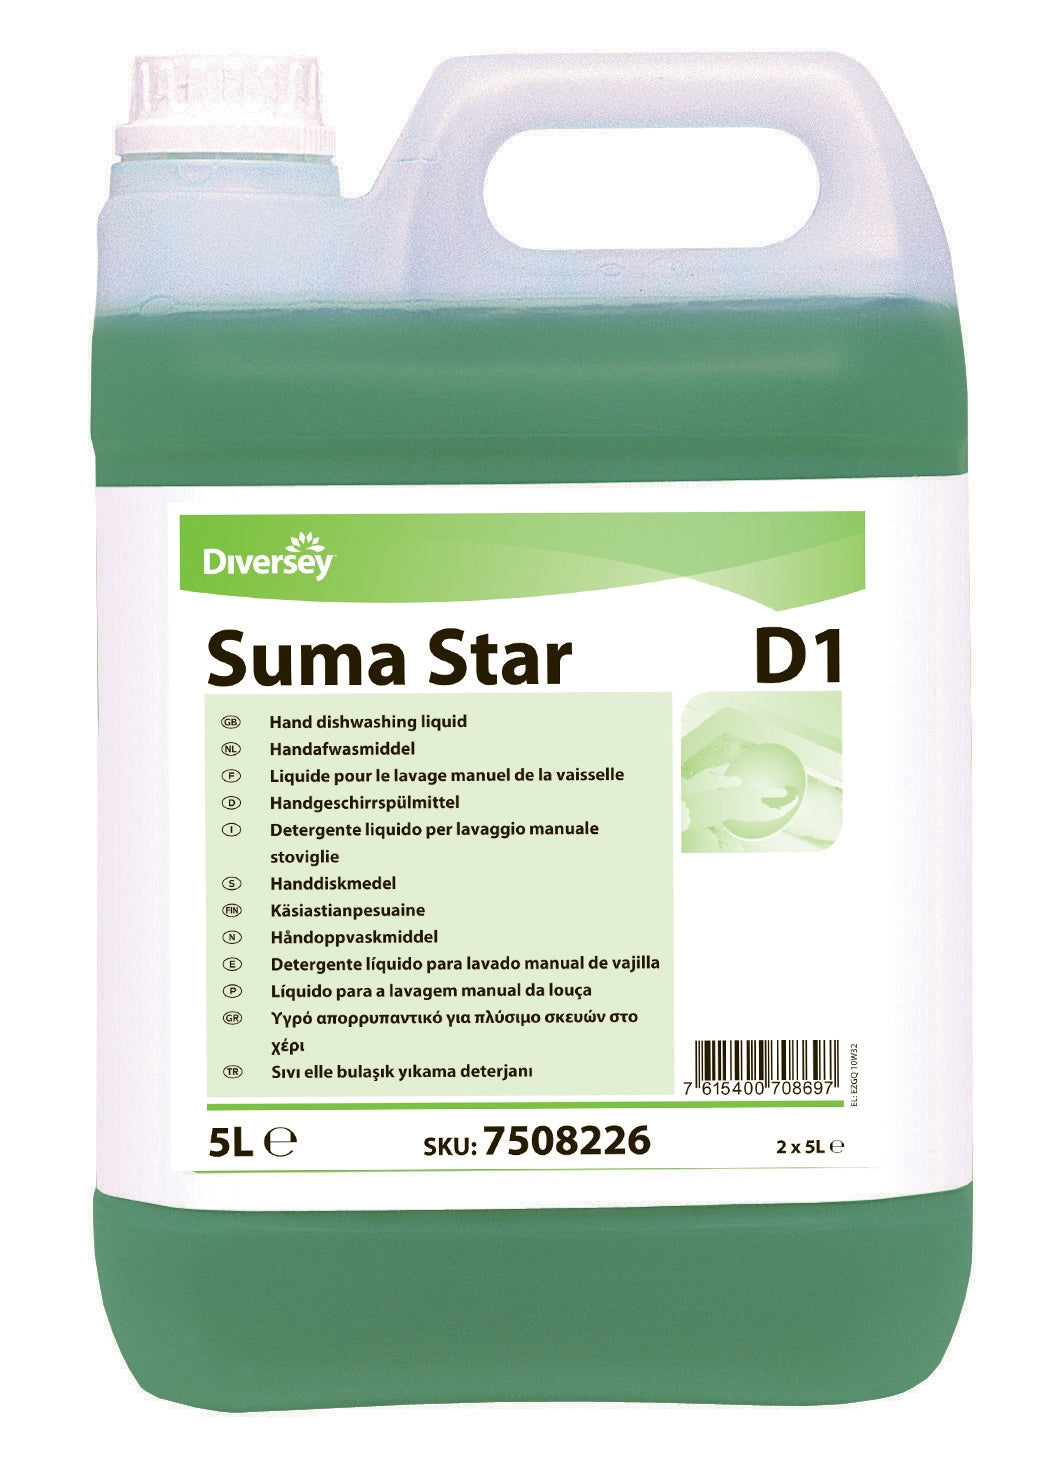 Diversey Diversey Suma Star D1 Hand Dishwashing Detergent 5L - CT/2 Cleaning & Washroom Supplies  